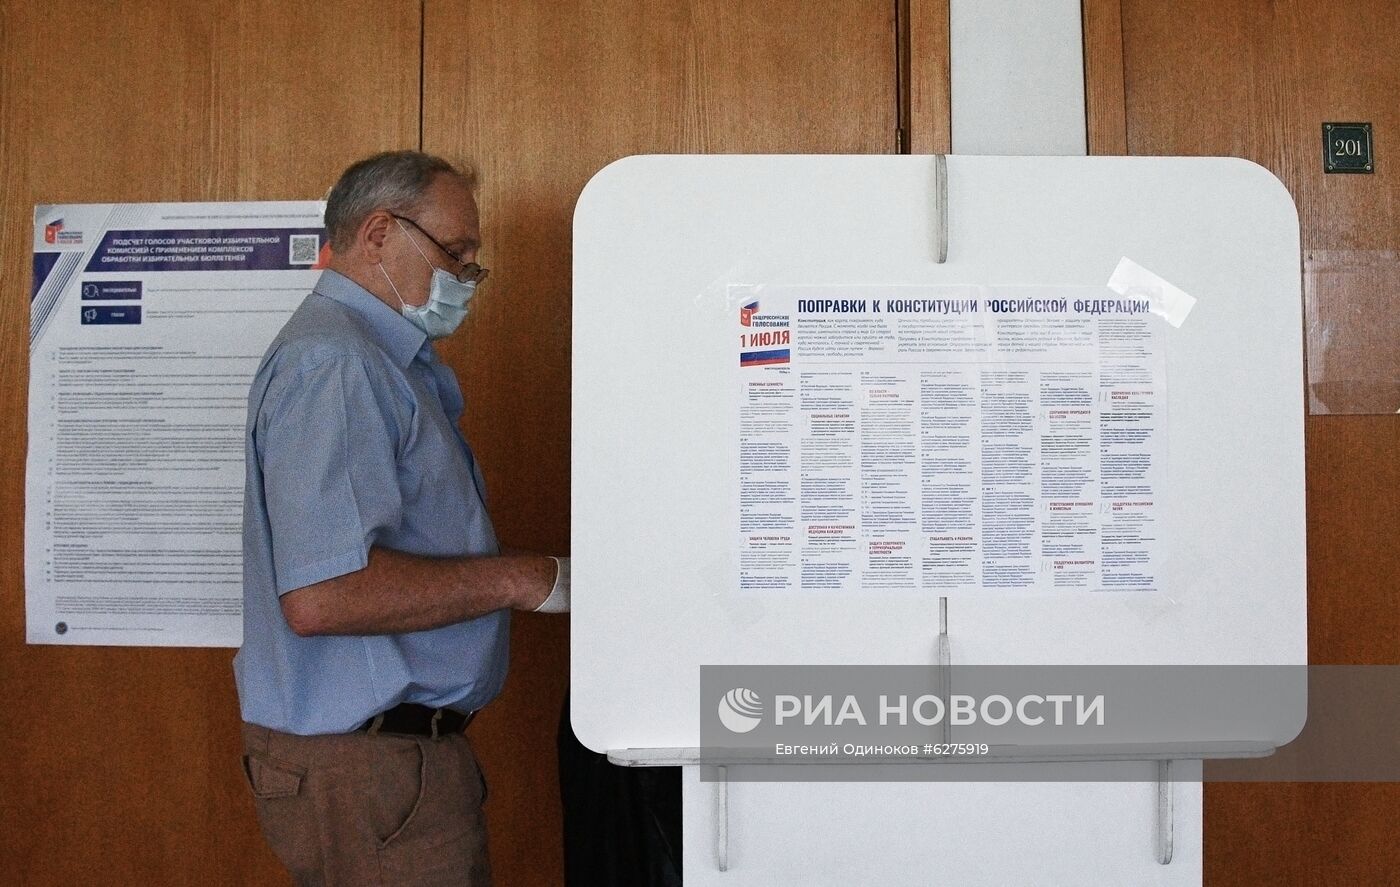 Голосование по внесению поправок в Конституцию РФ в Москве 